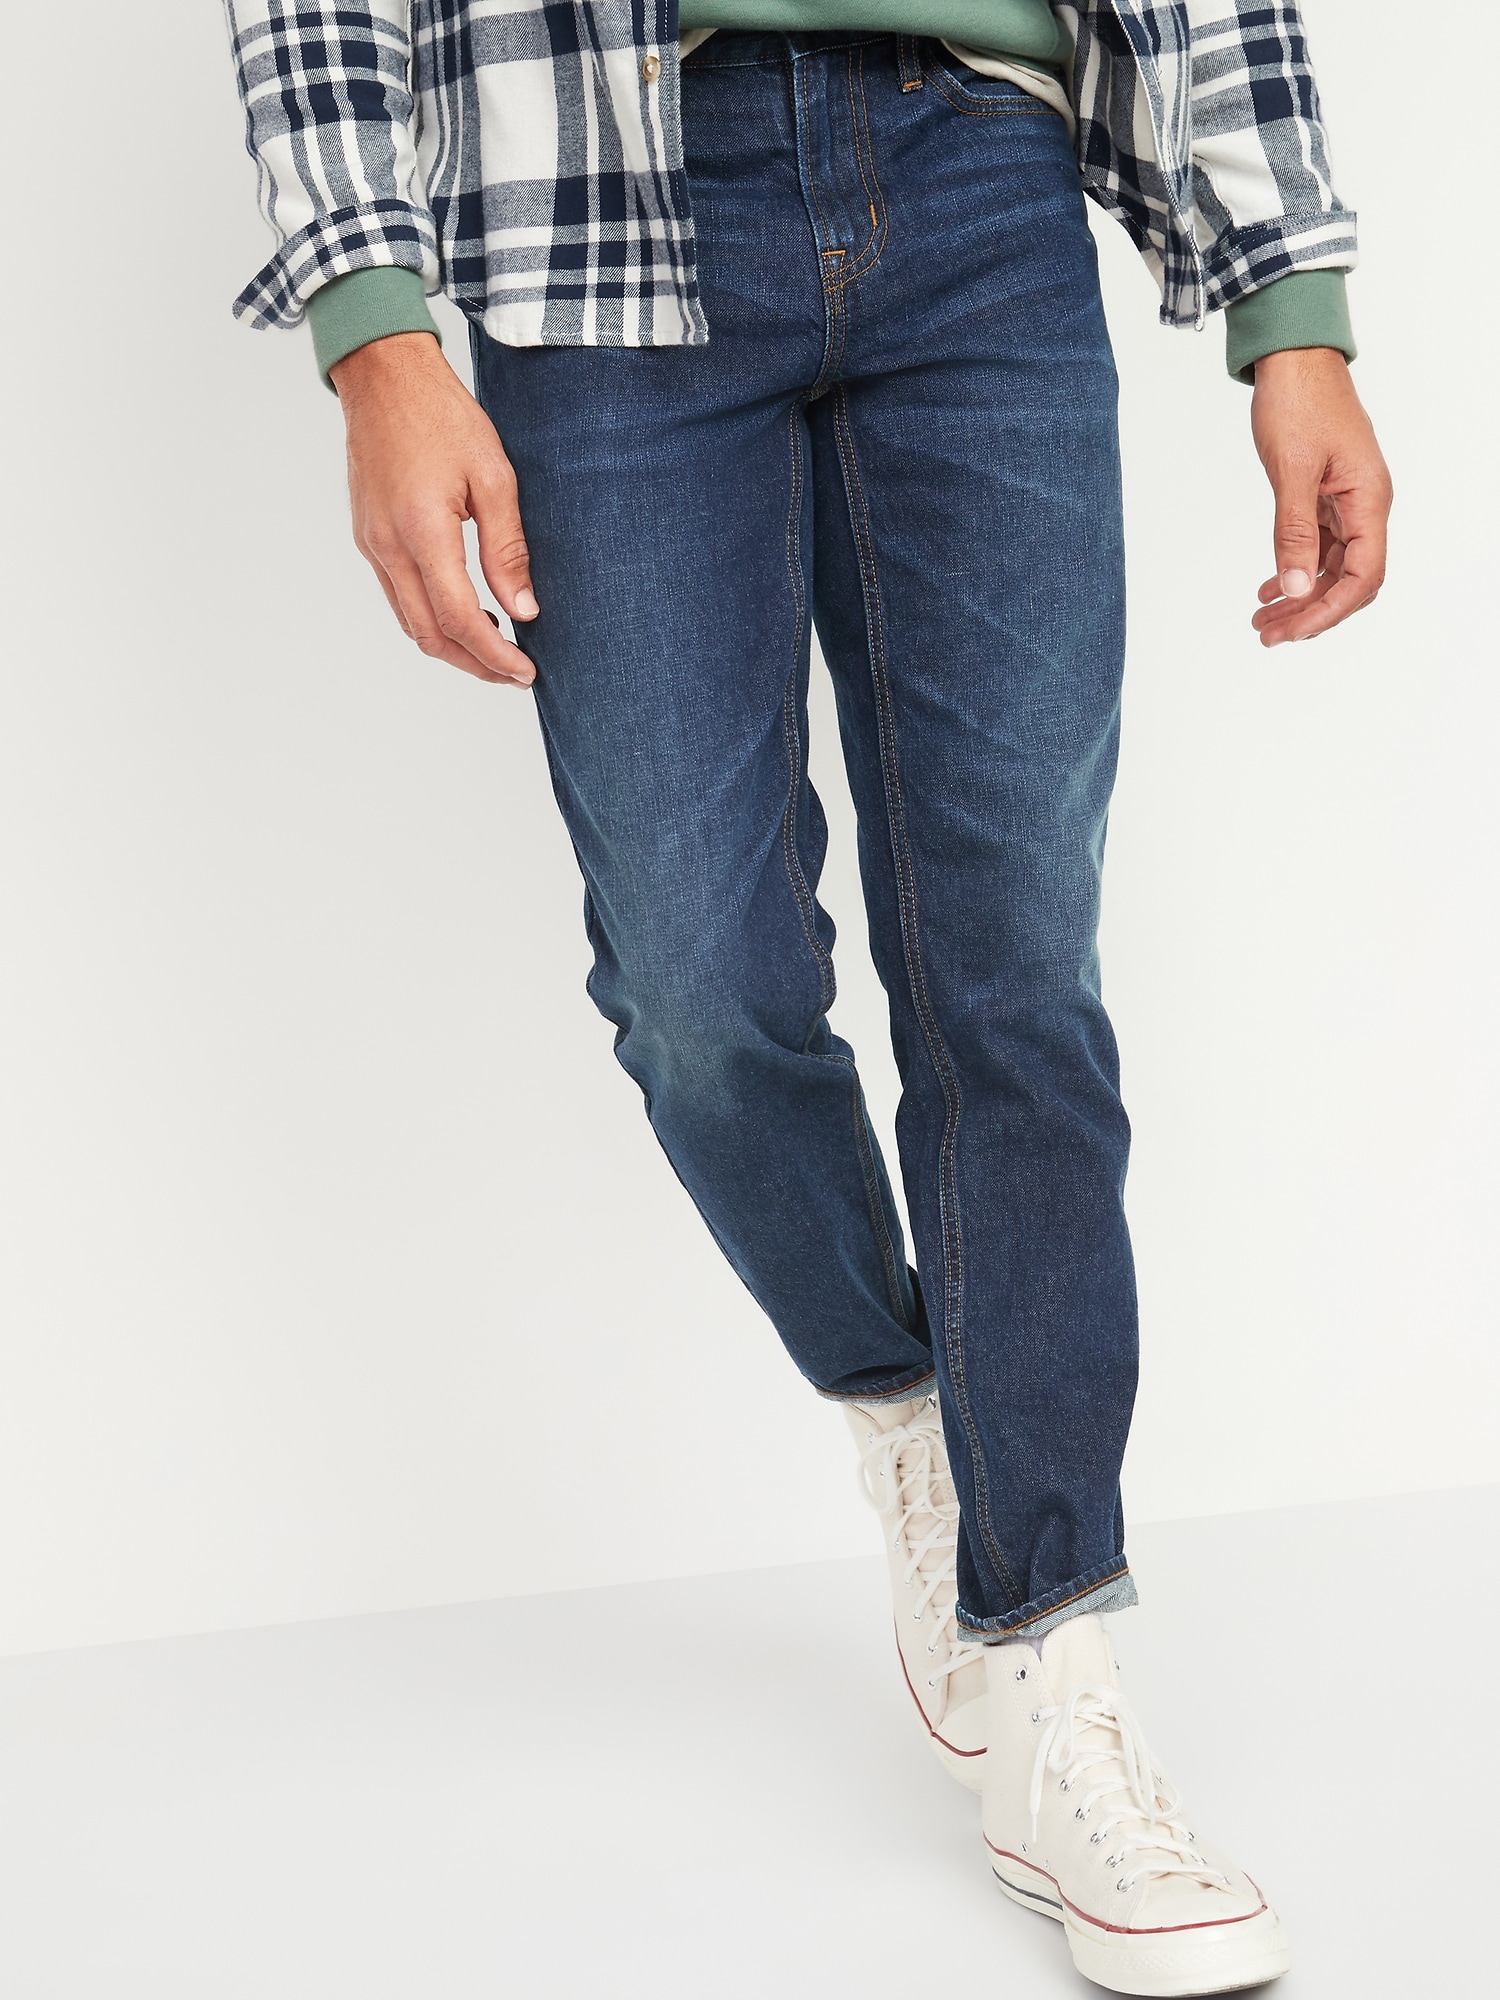 Athletic Taper Rigid Non-Stretch Dark-Wash Jeans for Men